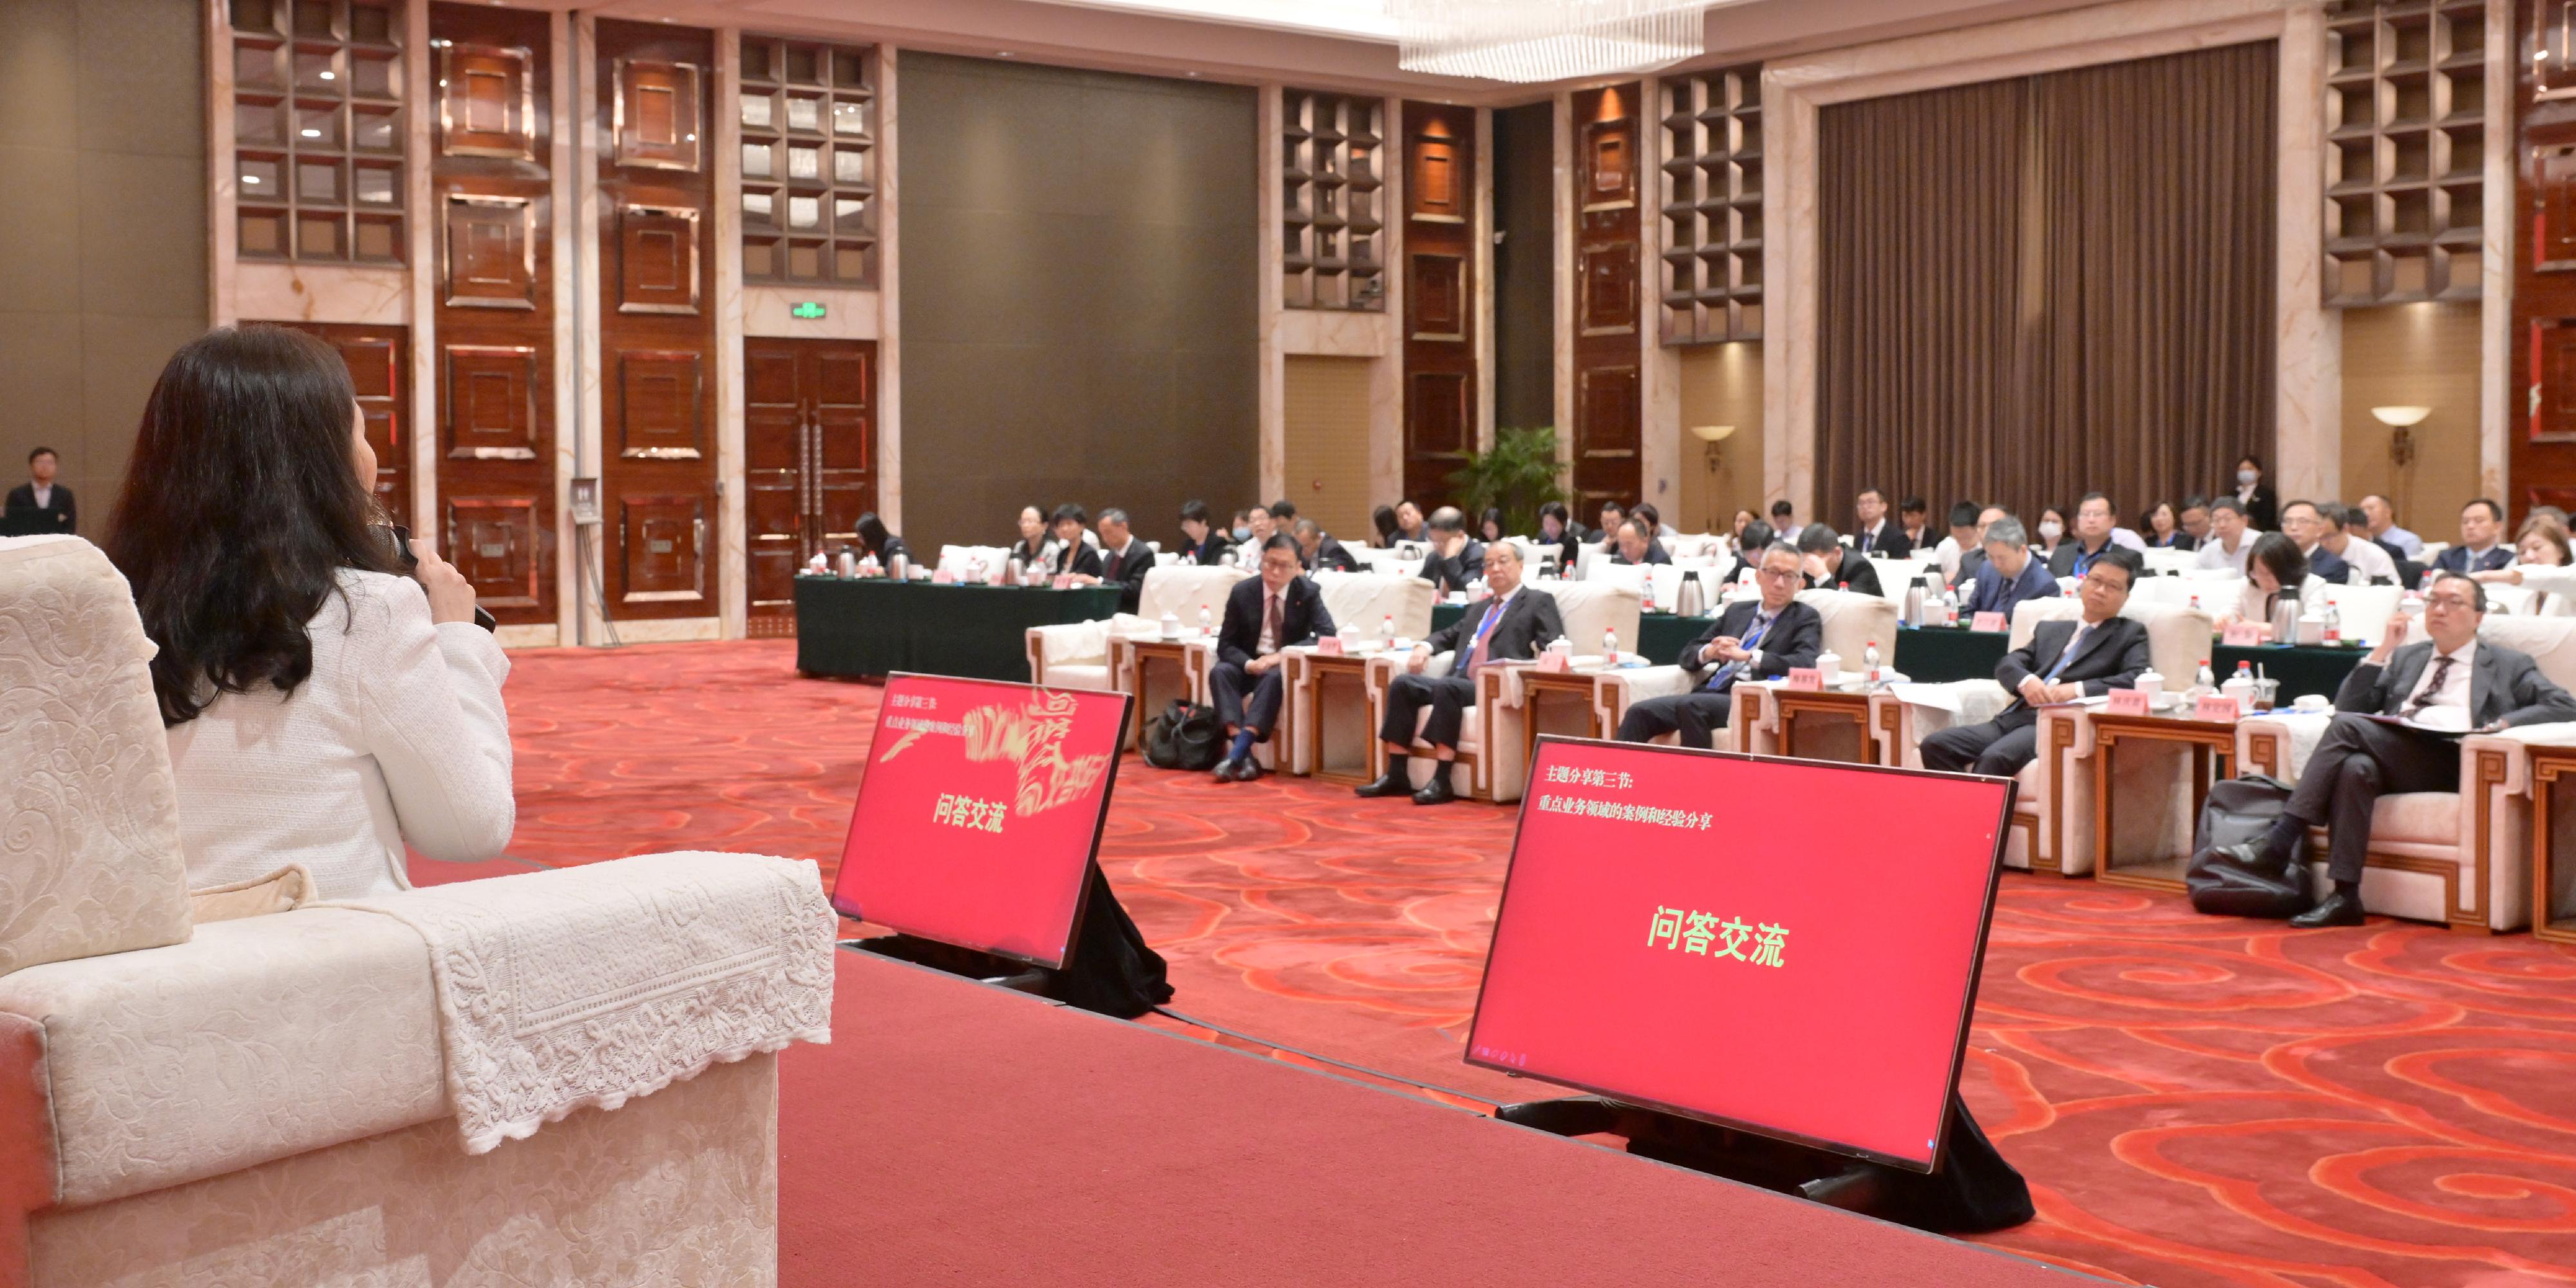 由國務院國有資產監督管理委員會主辦、商務部條約法律司和律政司共同舉辦的第二屆「一帶一路」法律挑戰與應對策略研討會今日（八月二十五日）在北京舉行。圖示嘉賓講者和與會者在研討會主題分享第三節的問答部分，就使用香港法律服務協助企業在境外投資進行交流。